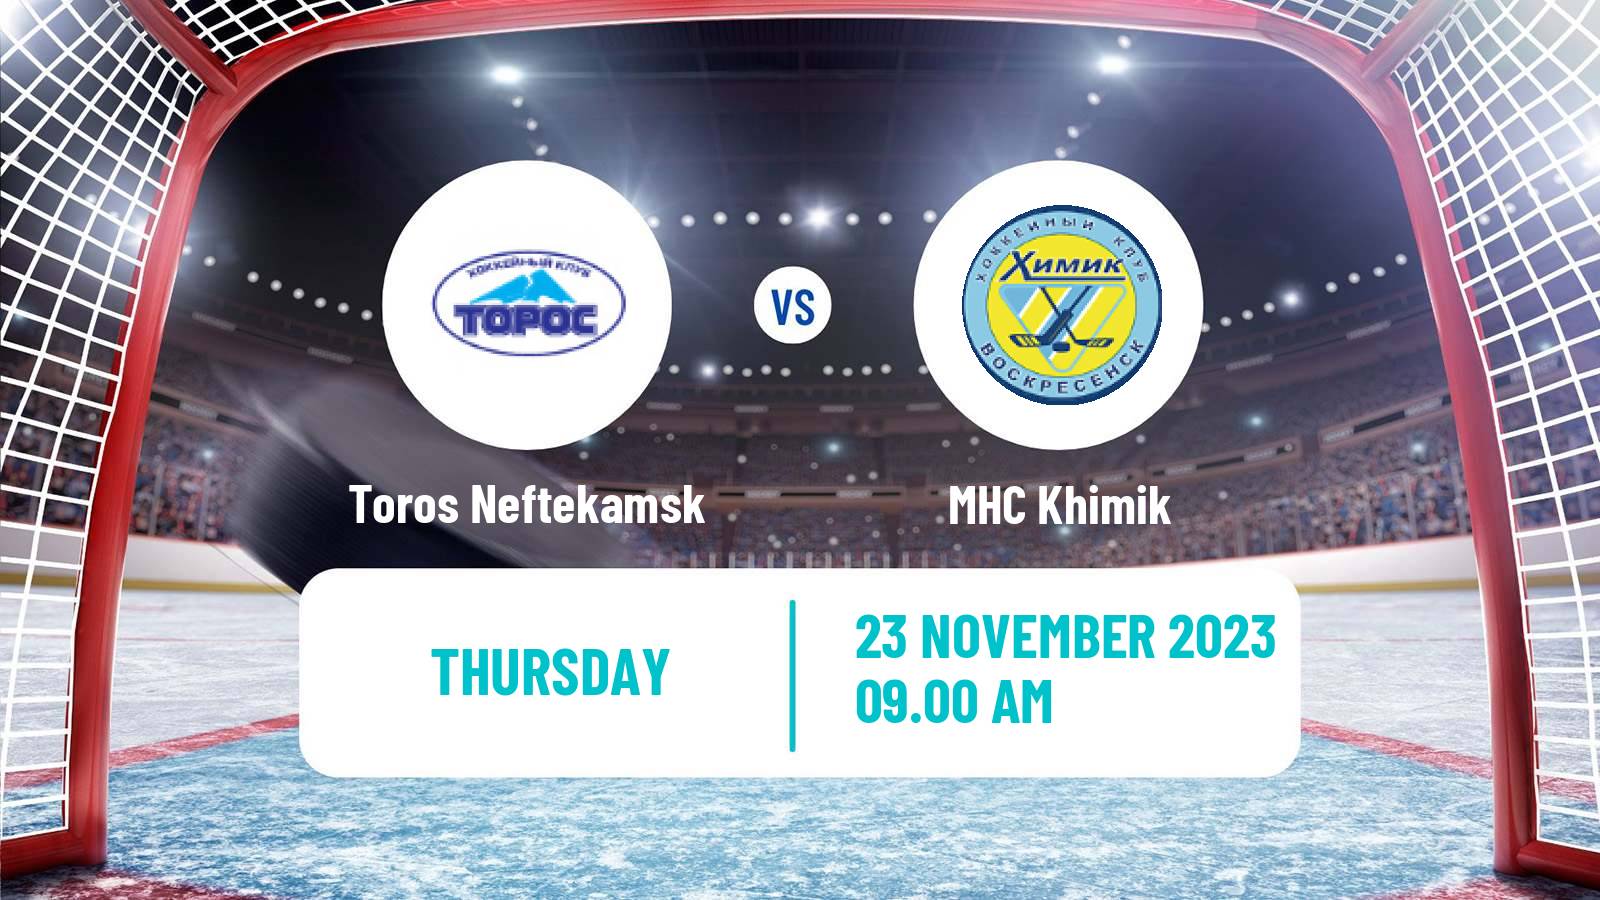 Hockey VHL Toros Neftekamsk - Khimik